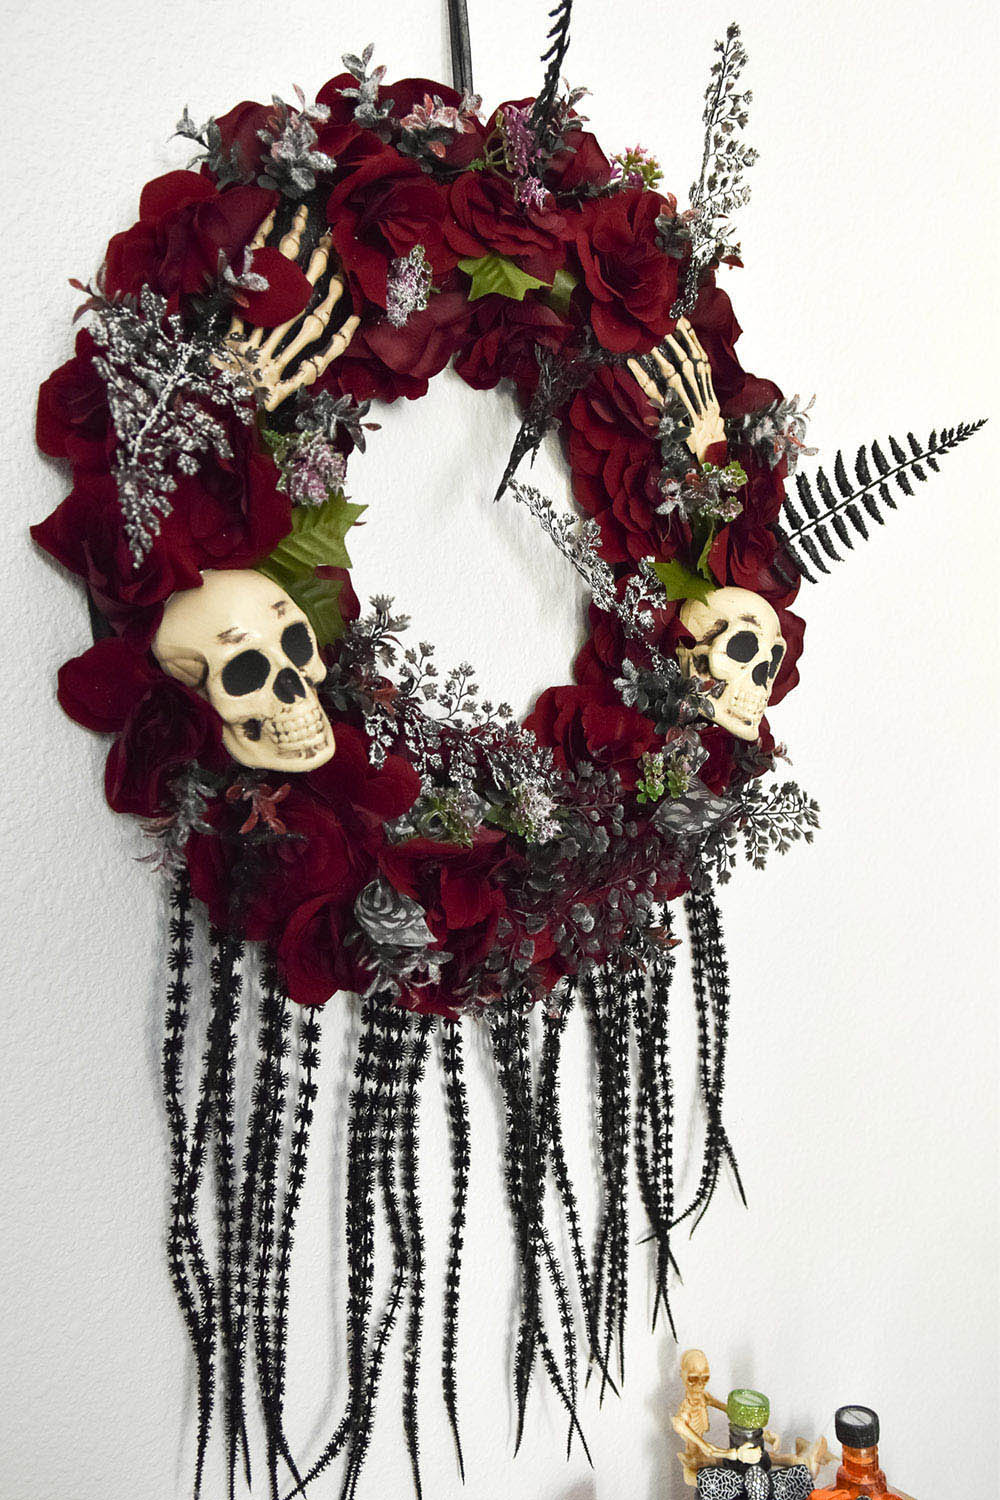 An indoor Halloween wreath of red flowers and skulls.